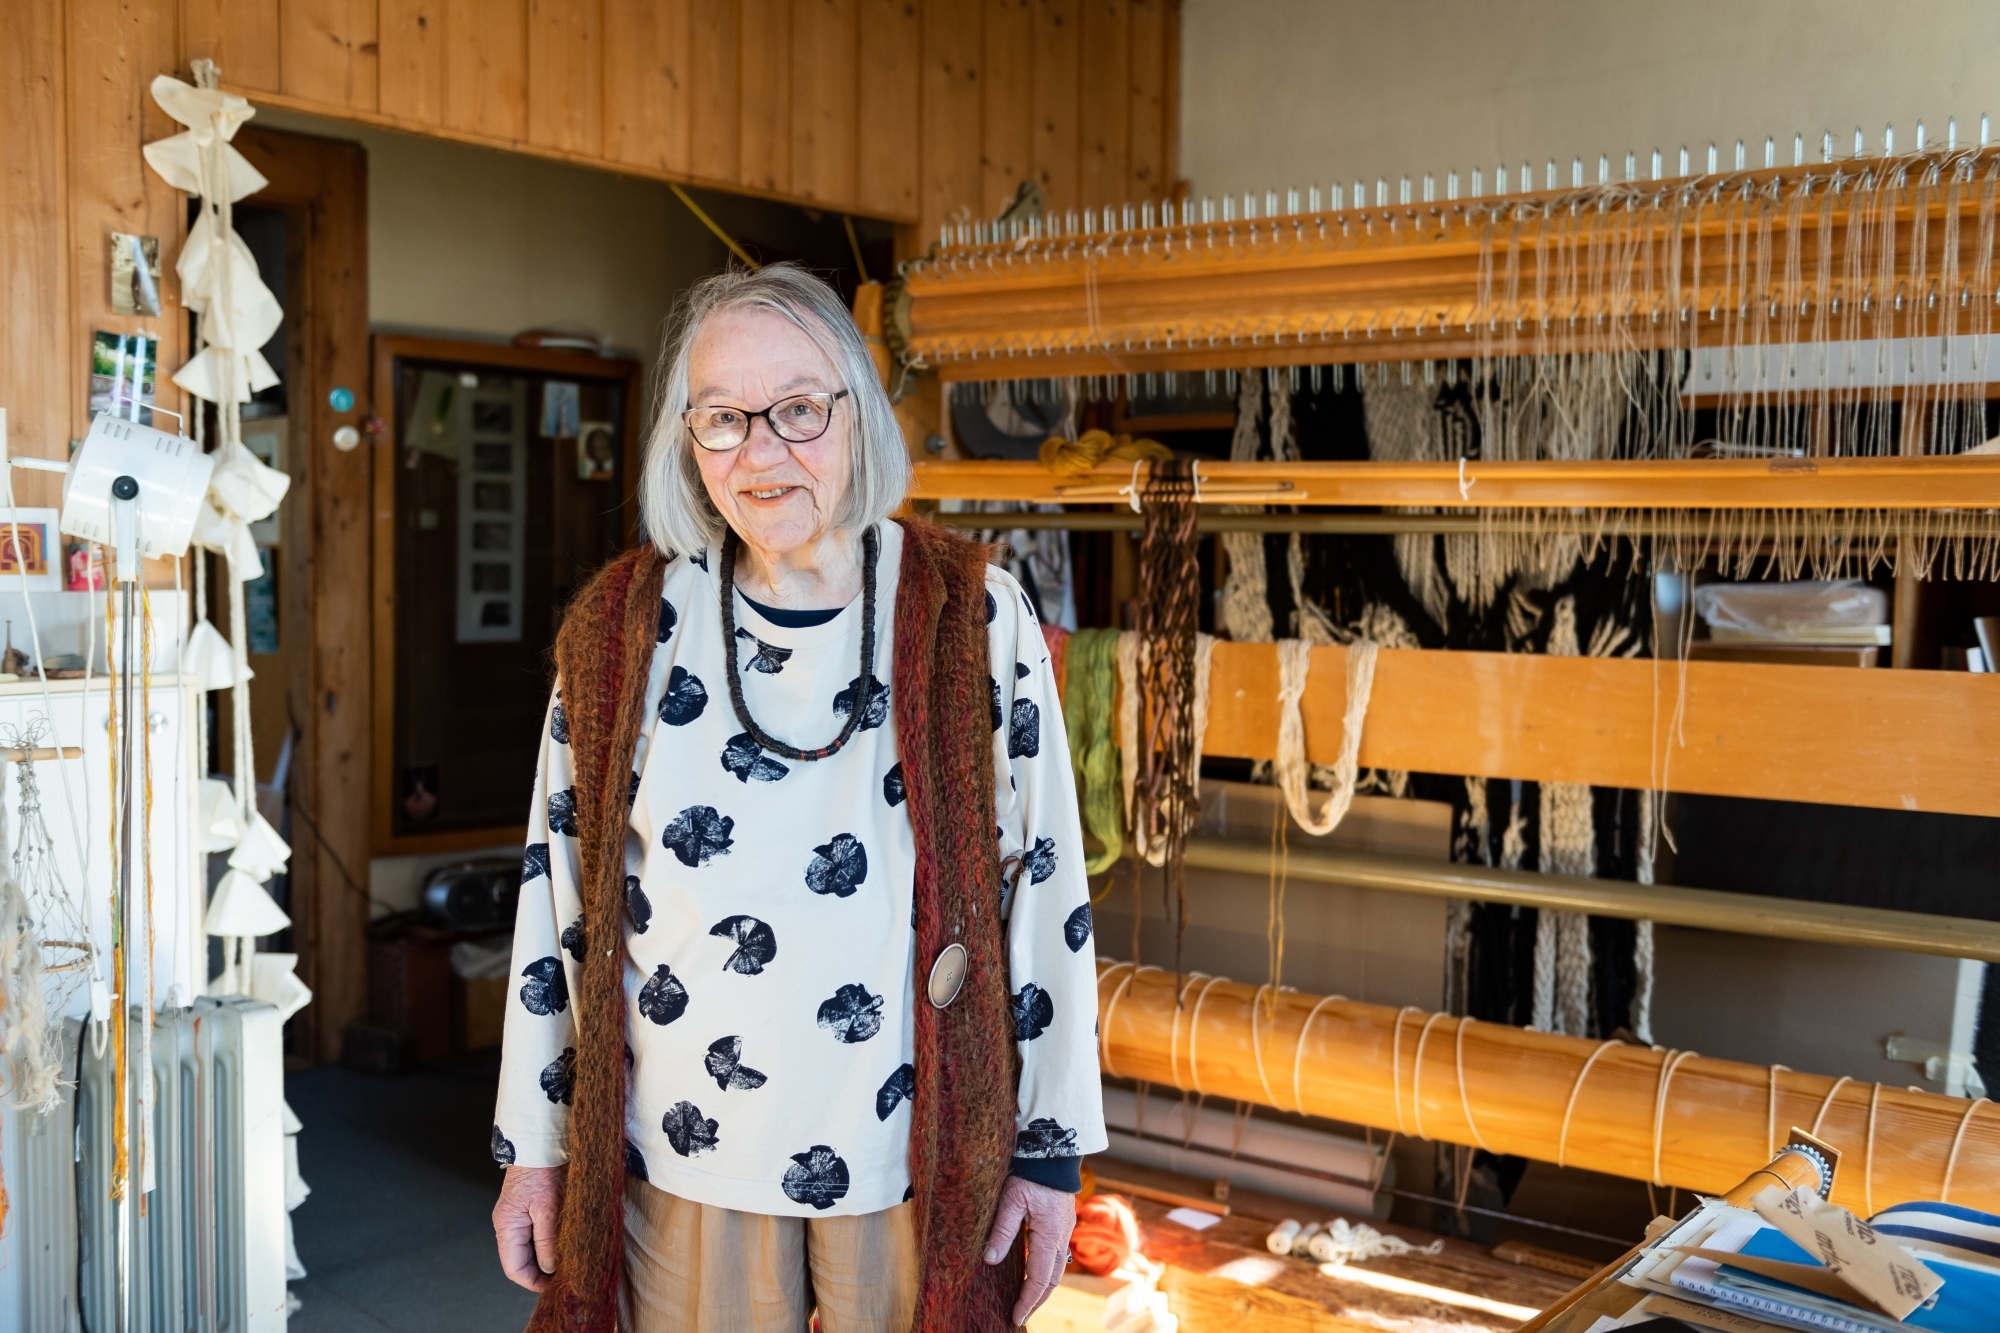 Jeanne-Odette devant son métier à tisser, outil de ses créations intemporelles et toujours modernes.